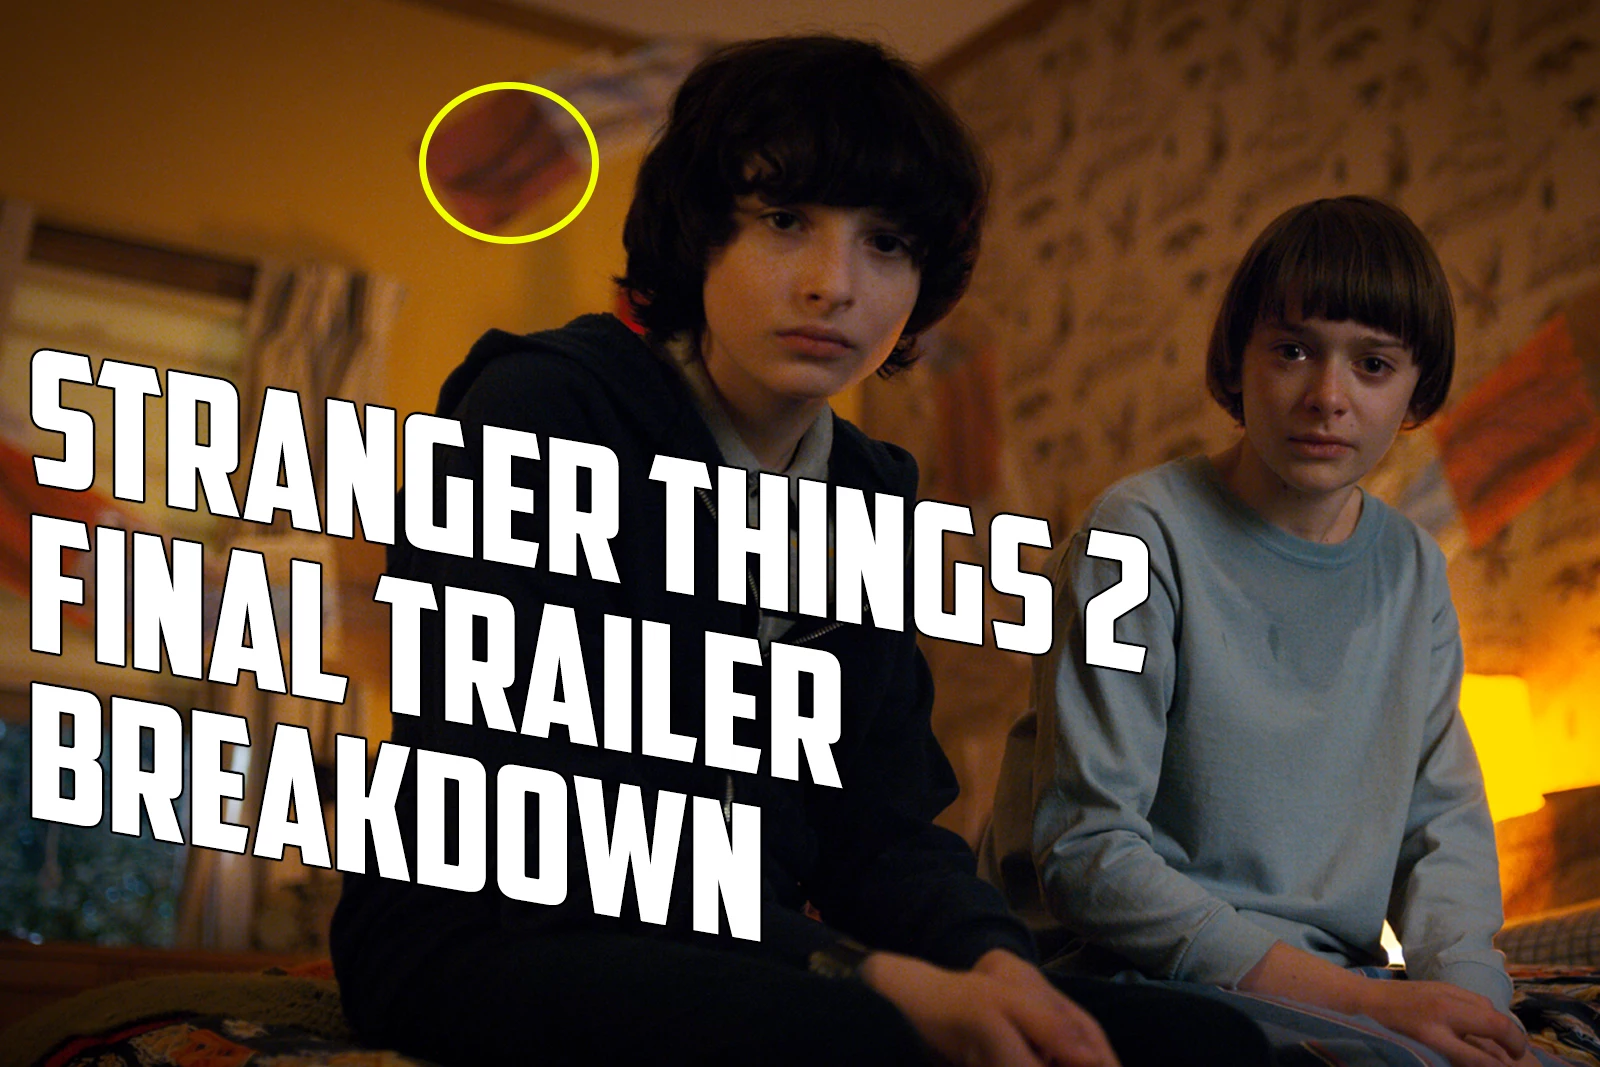 Stranger Things Season 5 Netflix Announcement Breakdown and Trailer Easter  Eggs 